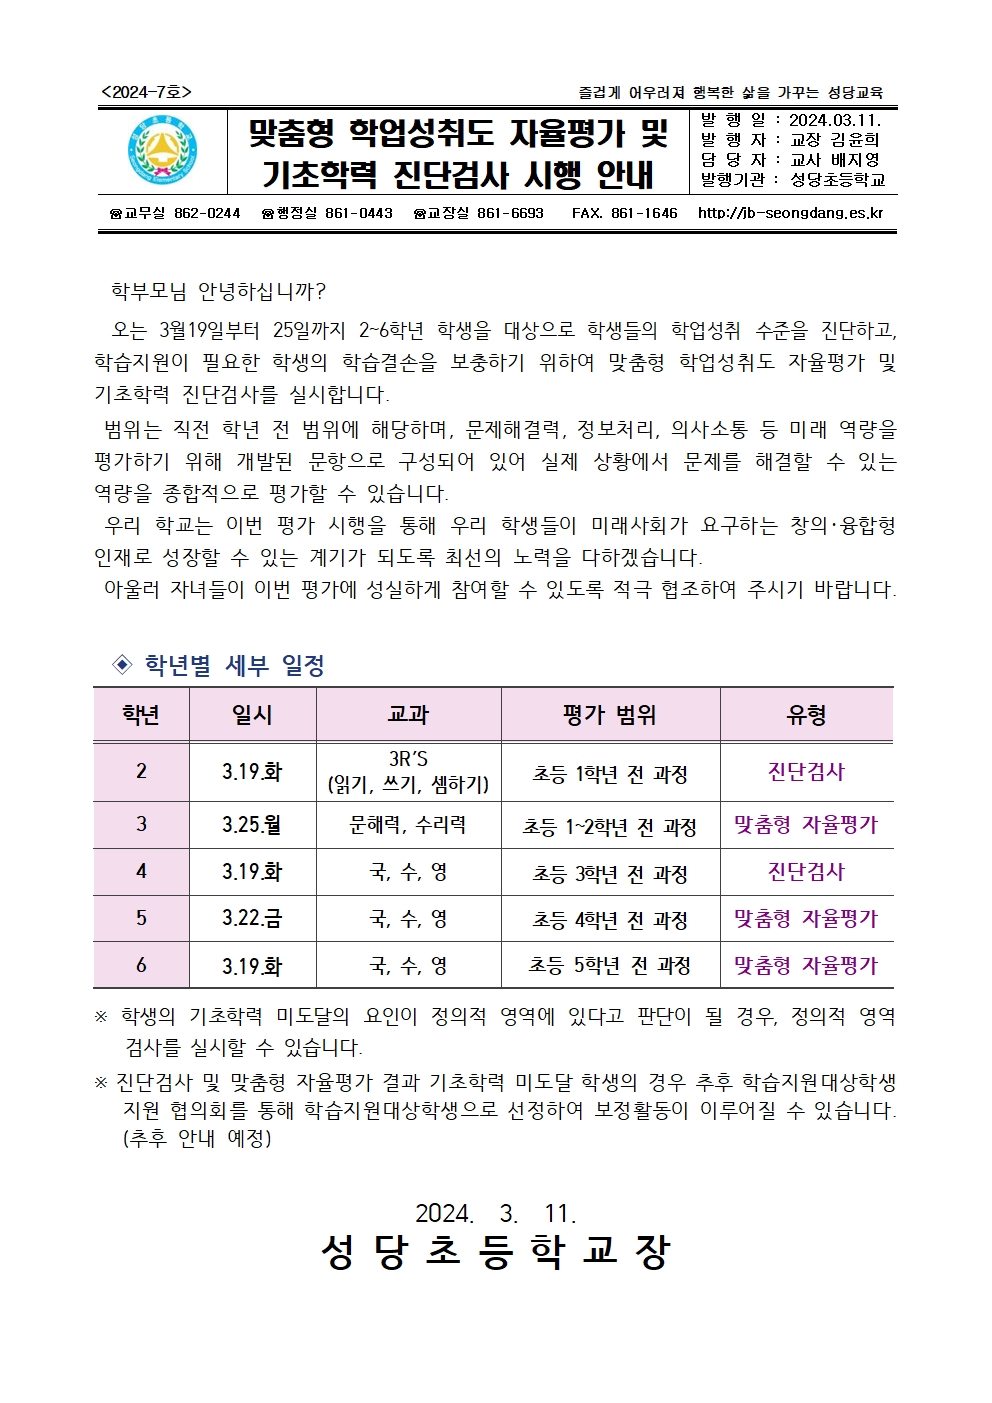 맞춤형자율평가 및 진단검사 가정통신문(3.11.)001